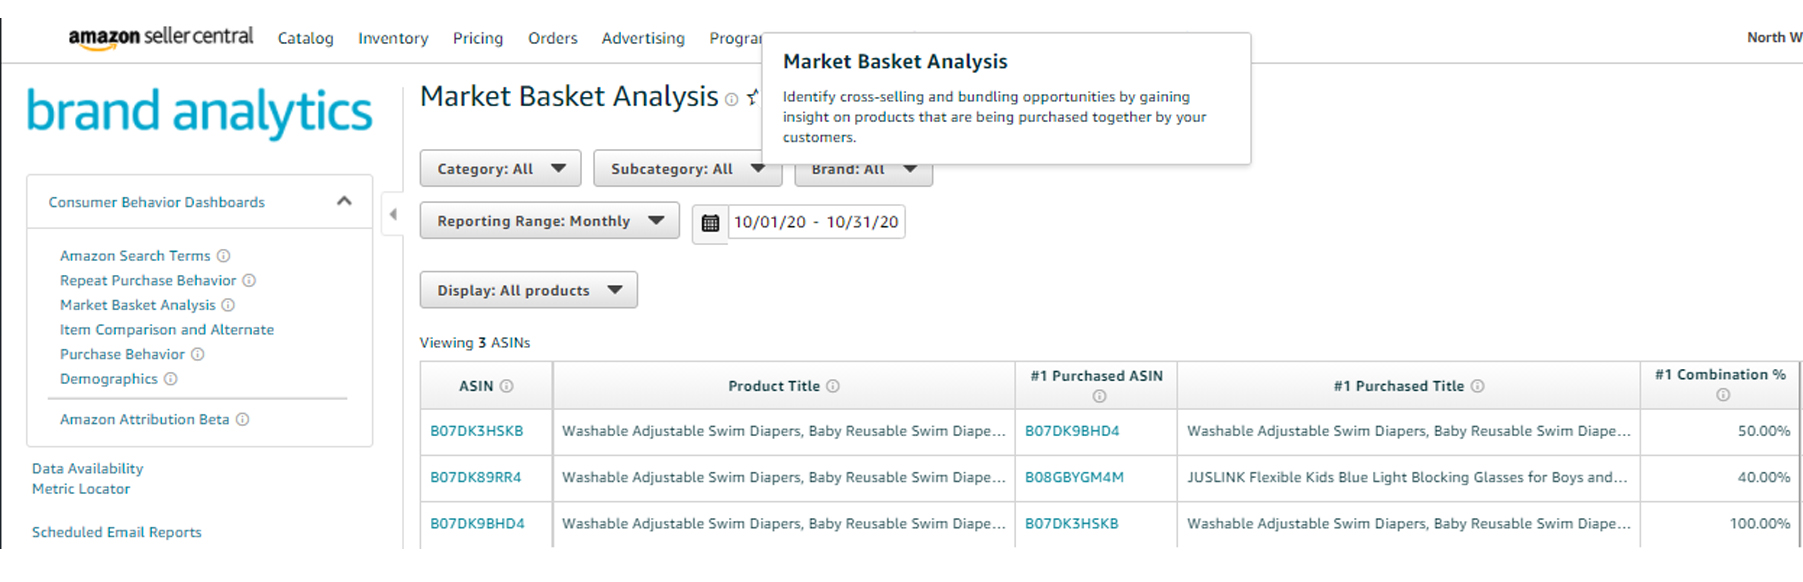 Market basket analysis.jpg